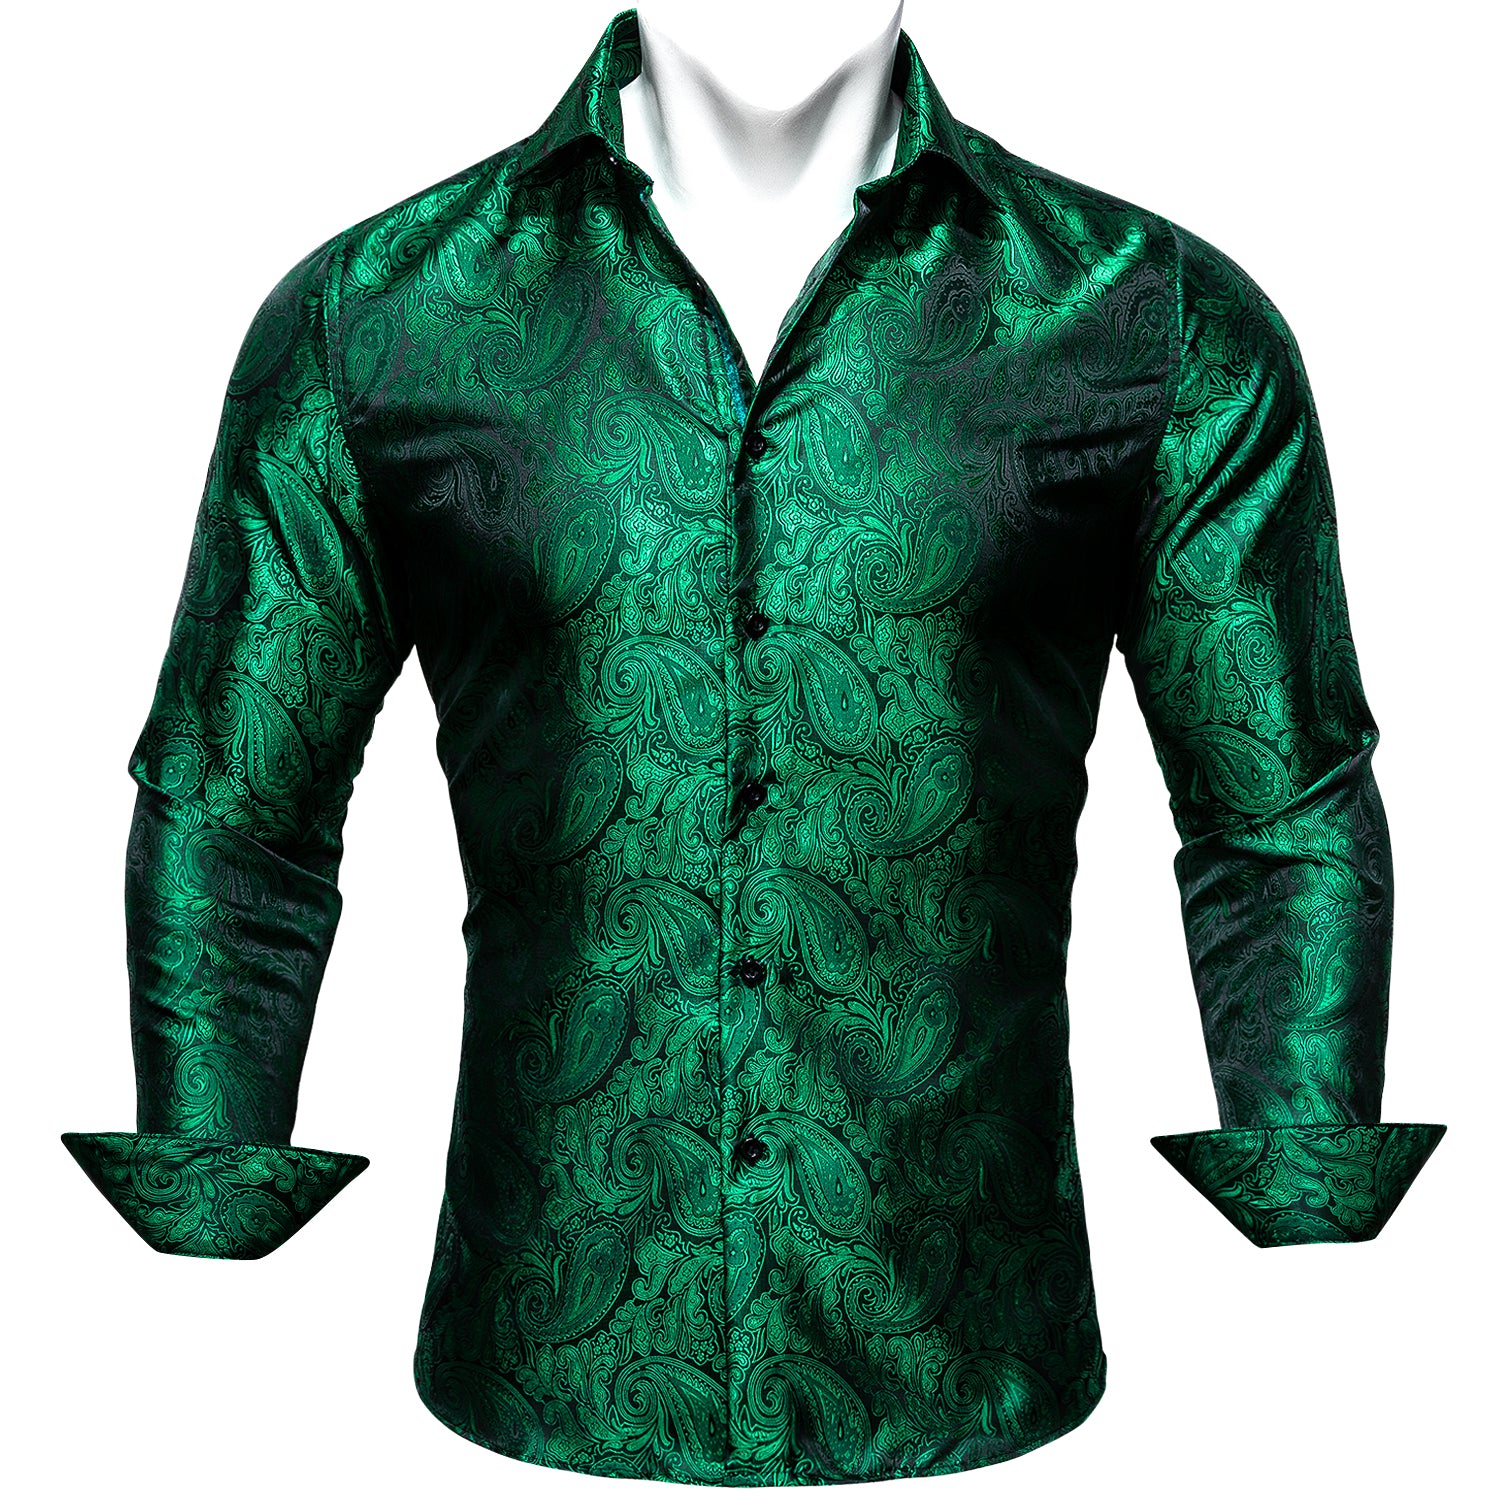 Barry.wang New Green Paisley Silk Shirt